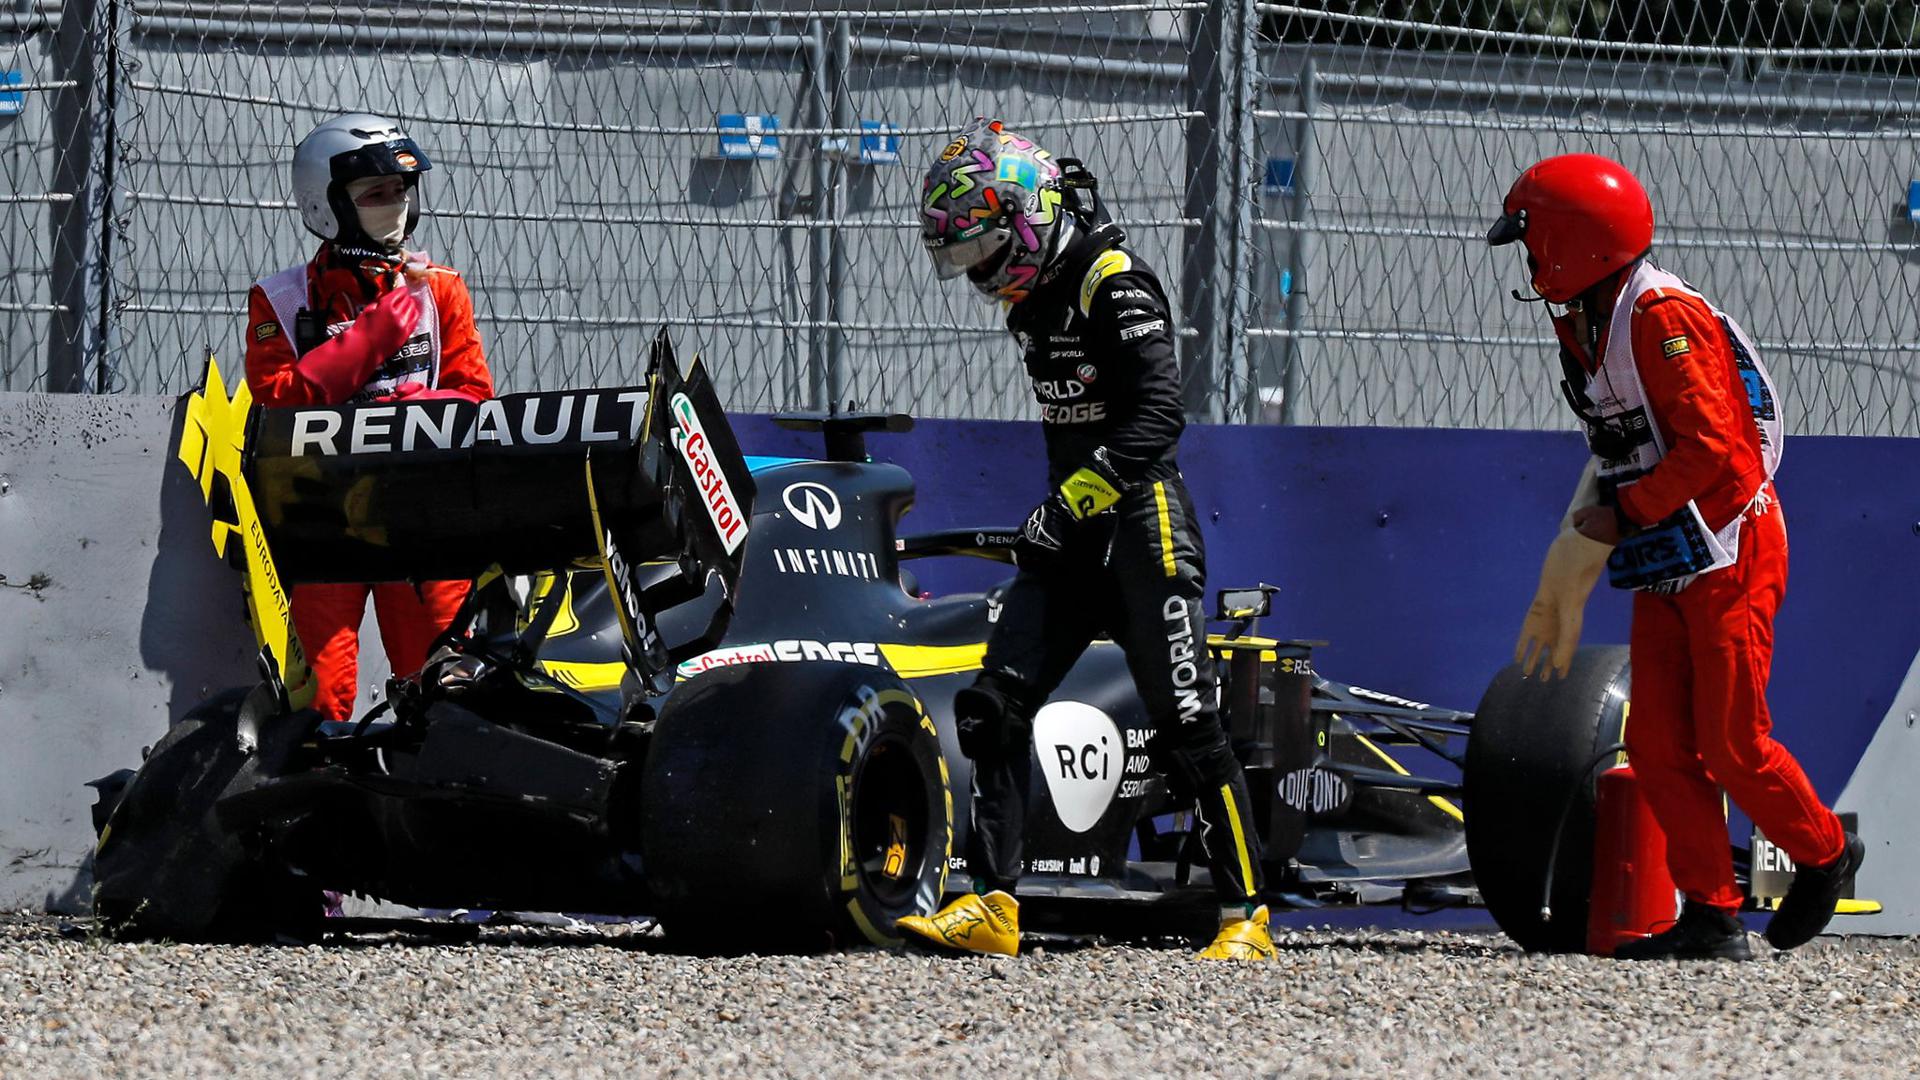 Daniel Ricciardo vom Renault F1 Team steigt aus seinem Wagen, nachdem er in Kurve neun in die Reifenstapel gekracht ist.